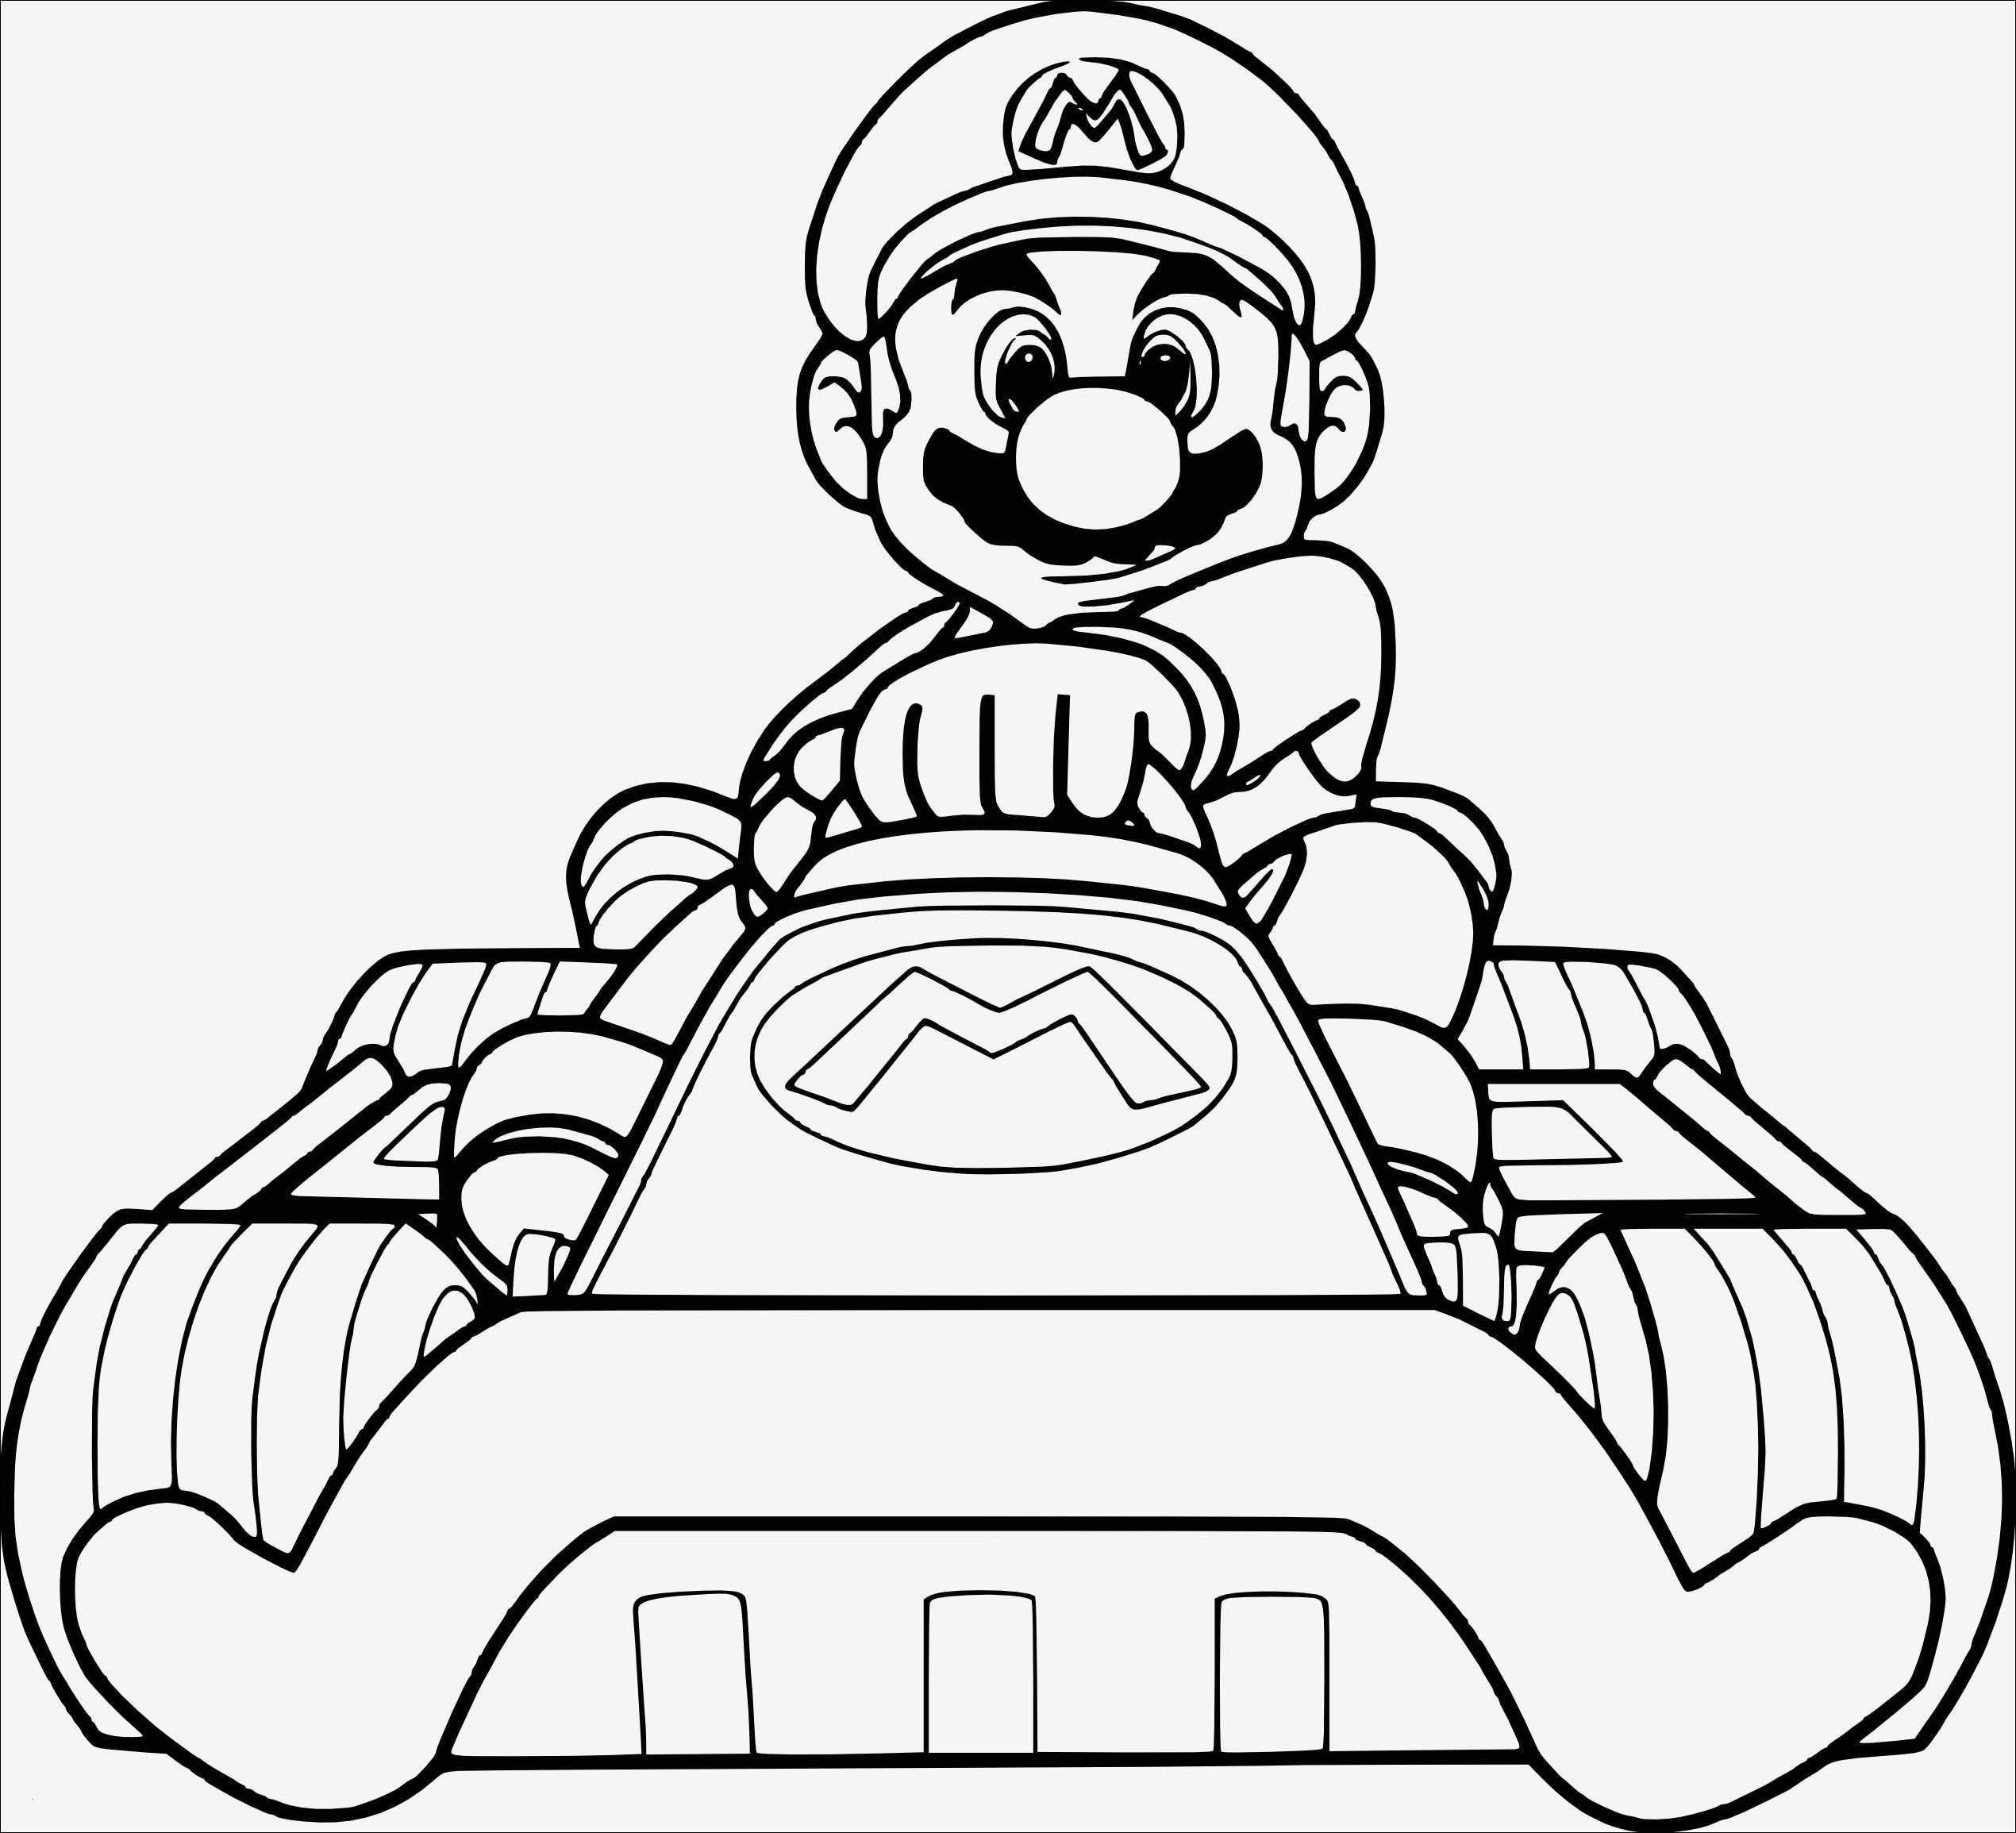 Super Mario Pilz Ausmalbilder
 Super Mario Pilz Ausmalbilder Bildnis Free Printable Mario